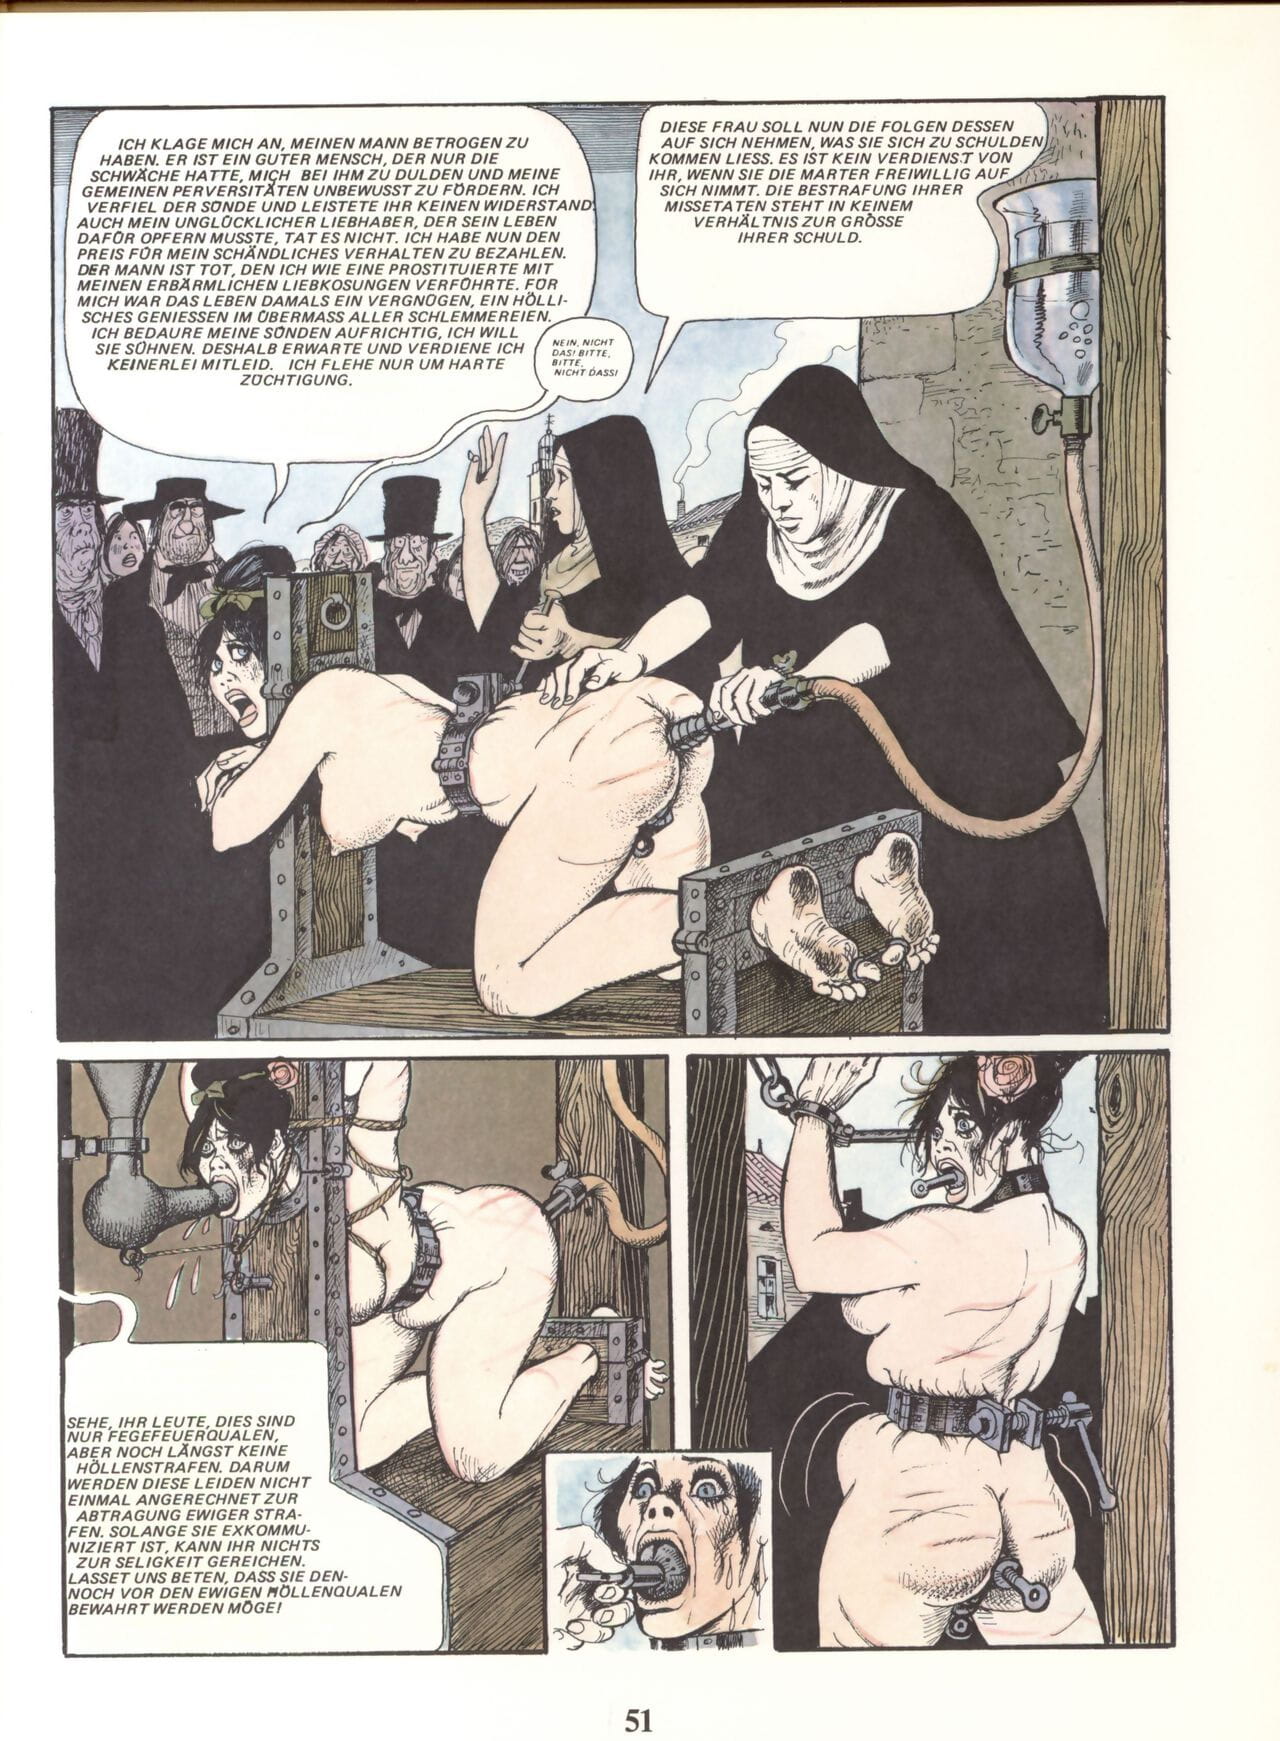 玛丽 加布里埃尔 德 Saint 优托品 #02 一部分 3 page 1